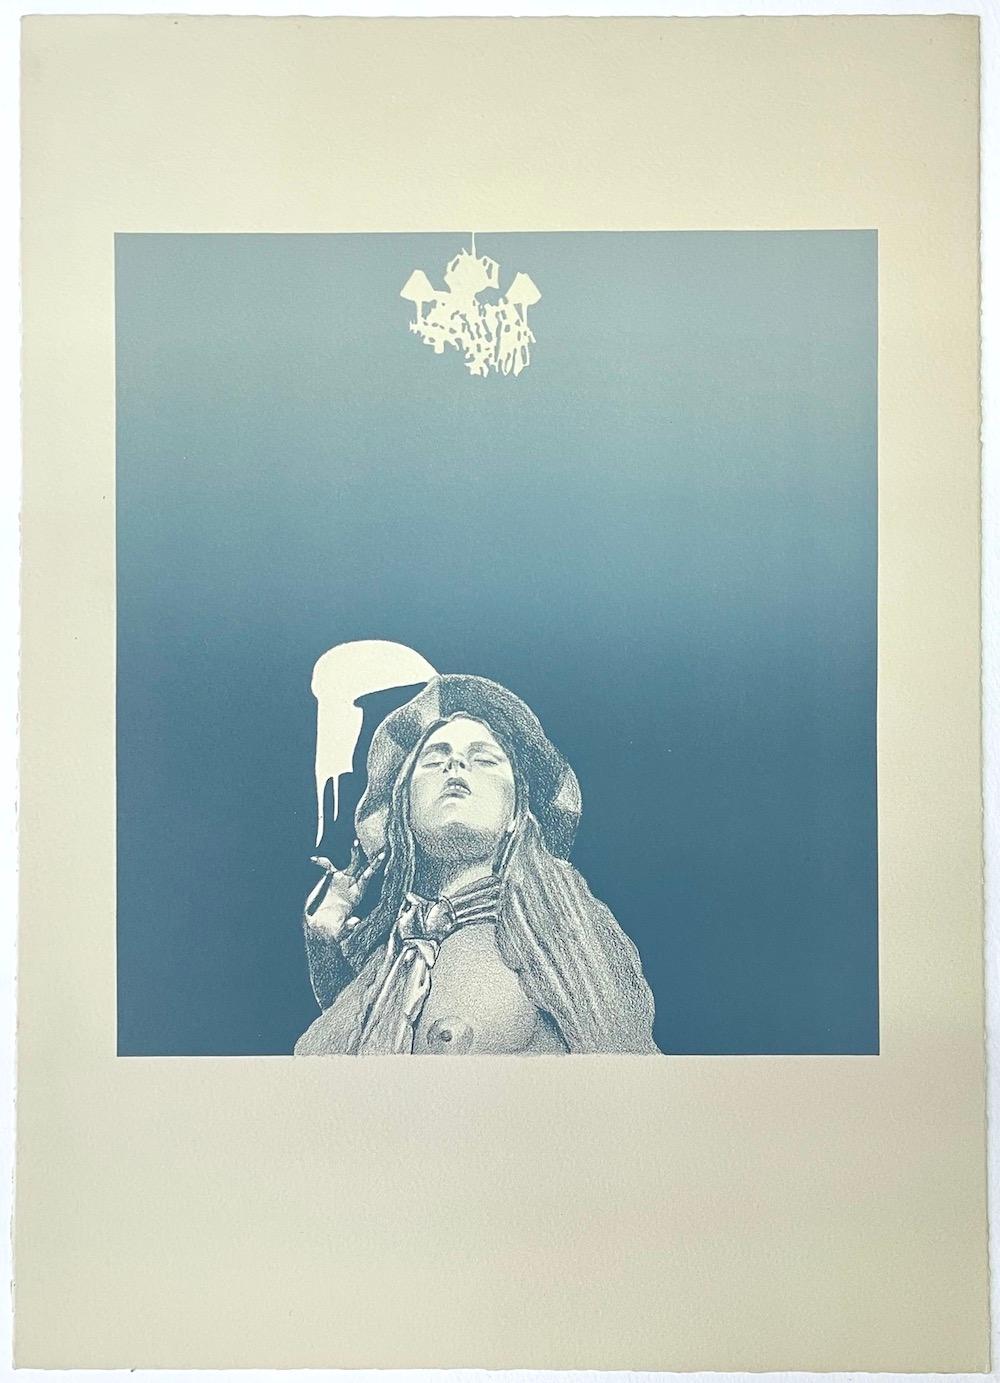  Jeune fille posée sous le lustre, lithographie en pierre dessinée à la main, bleu ardoise  - Réalisme Print par Mel Ramos